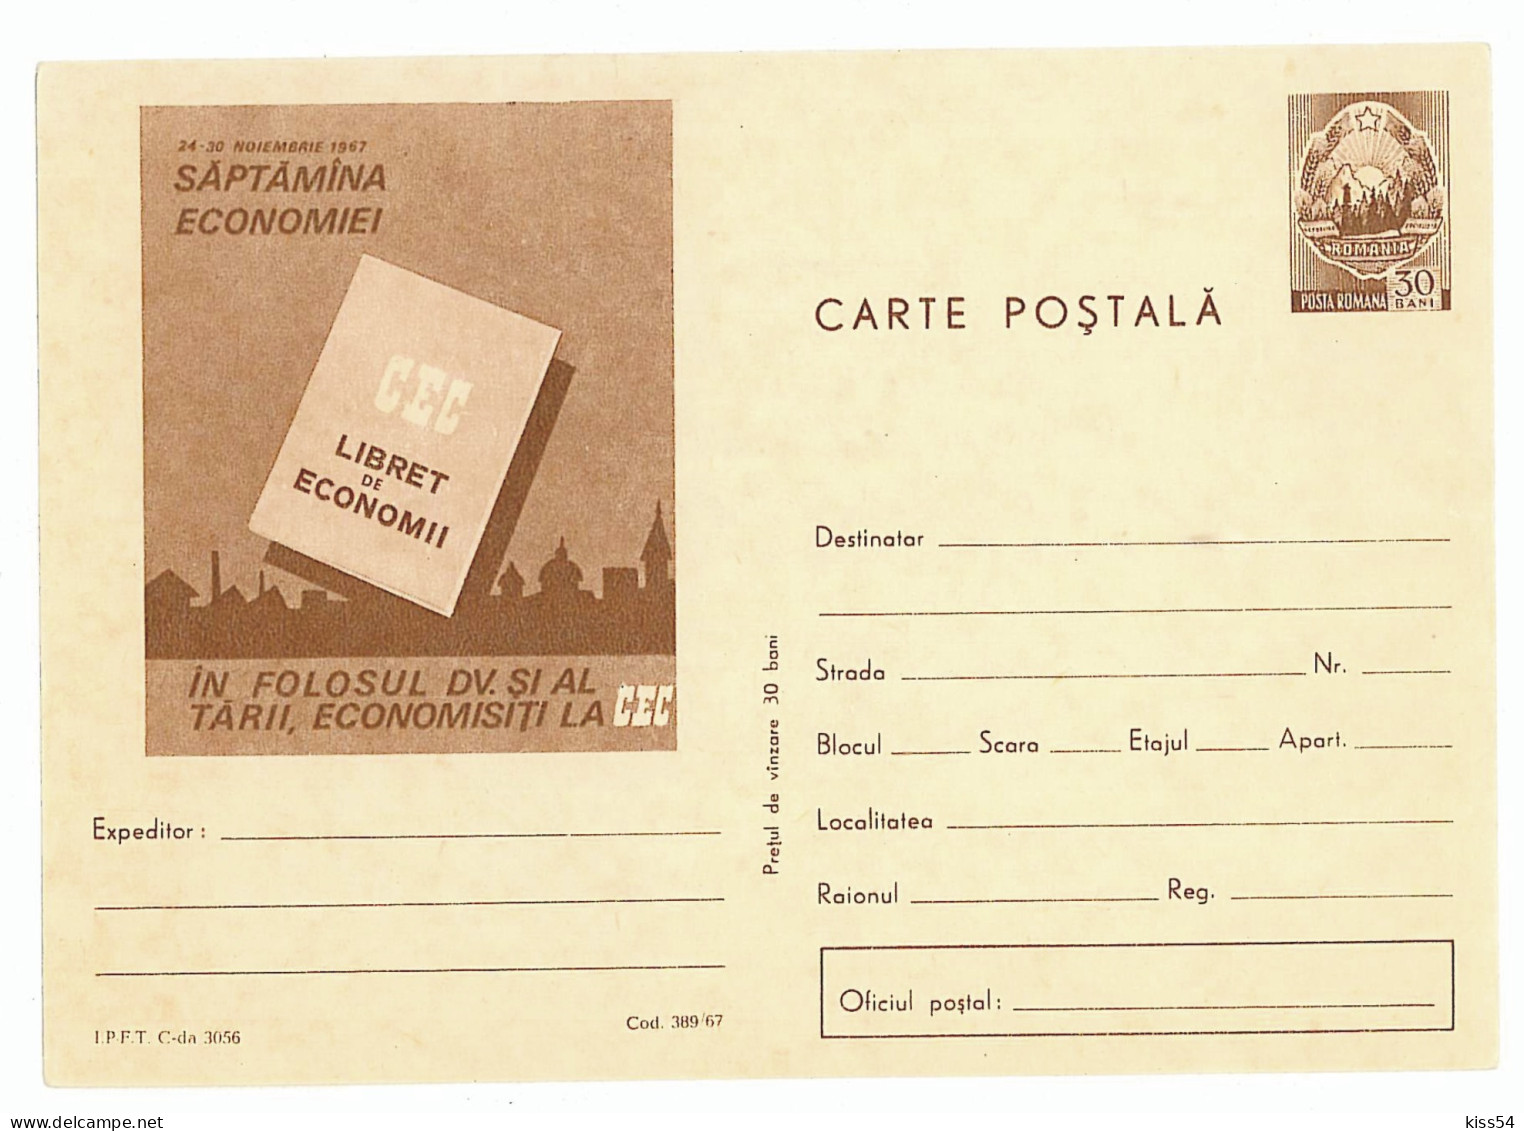 IP 67 - 389 Week Economy - Stationery - Unused - 1967 - Postal Stationery